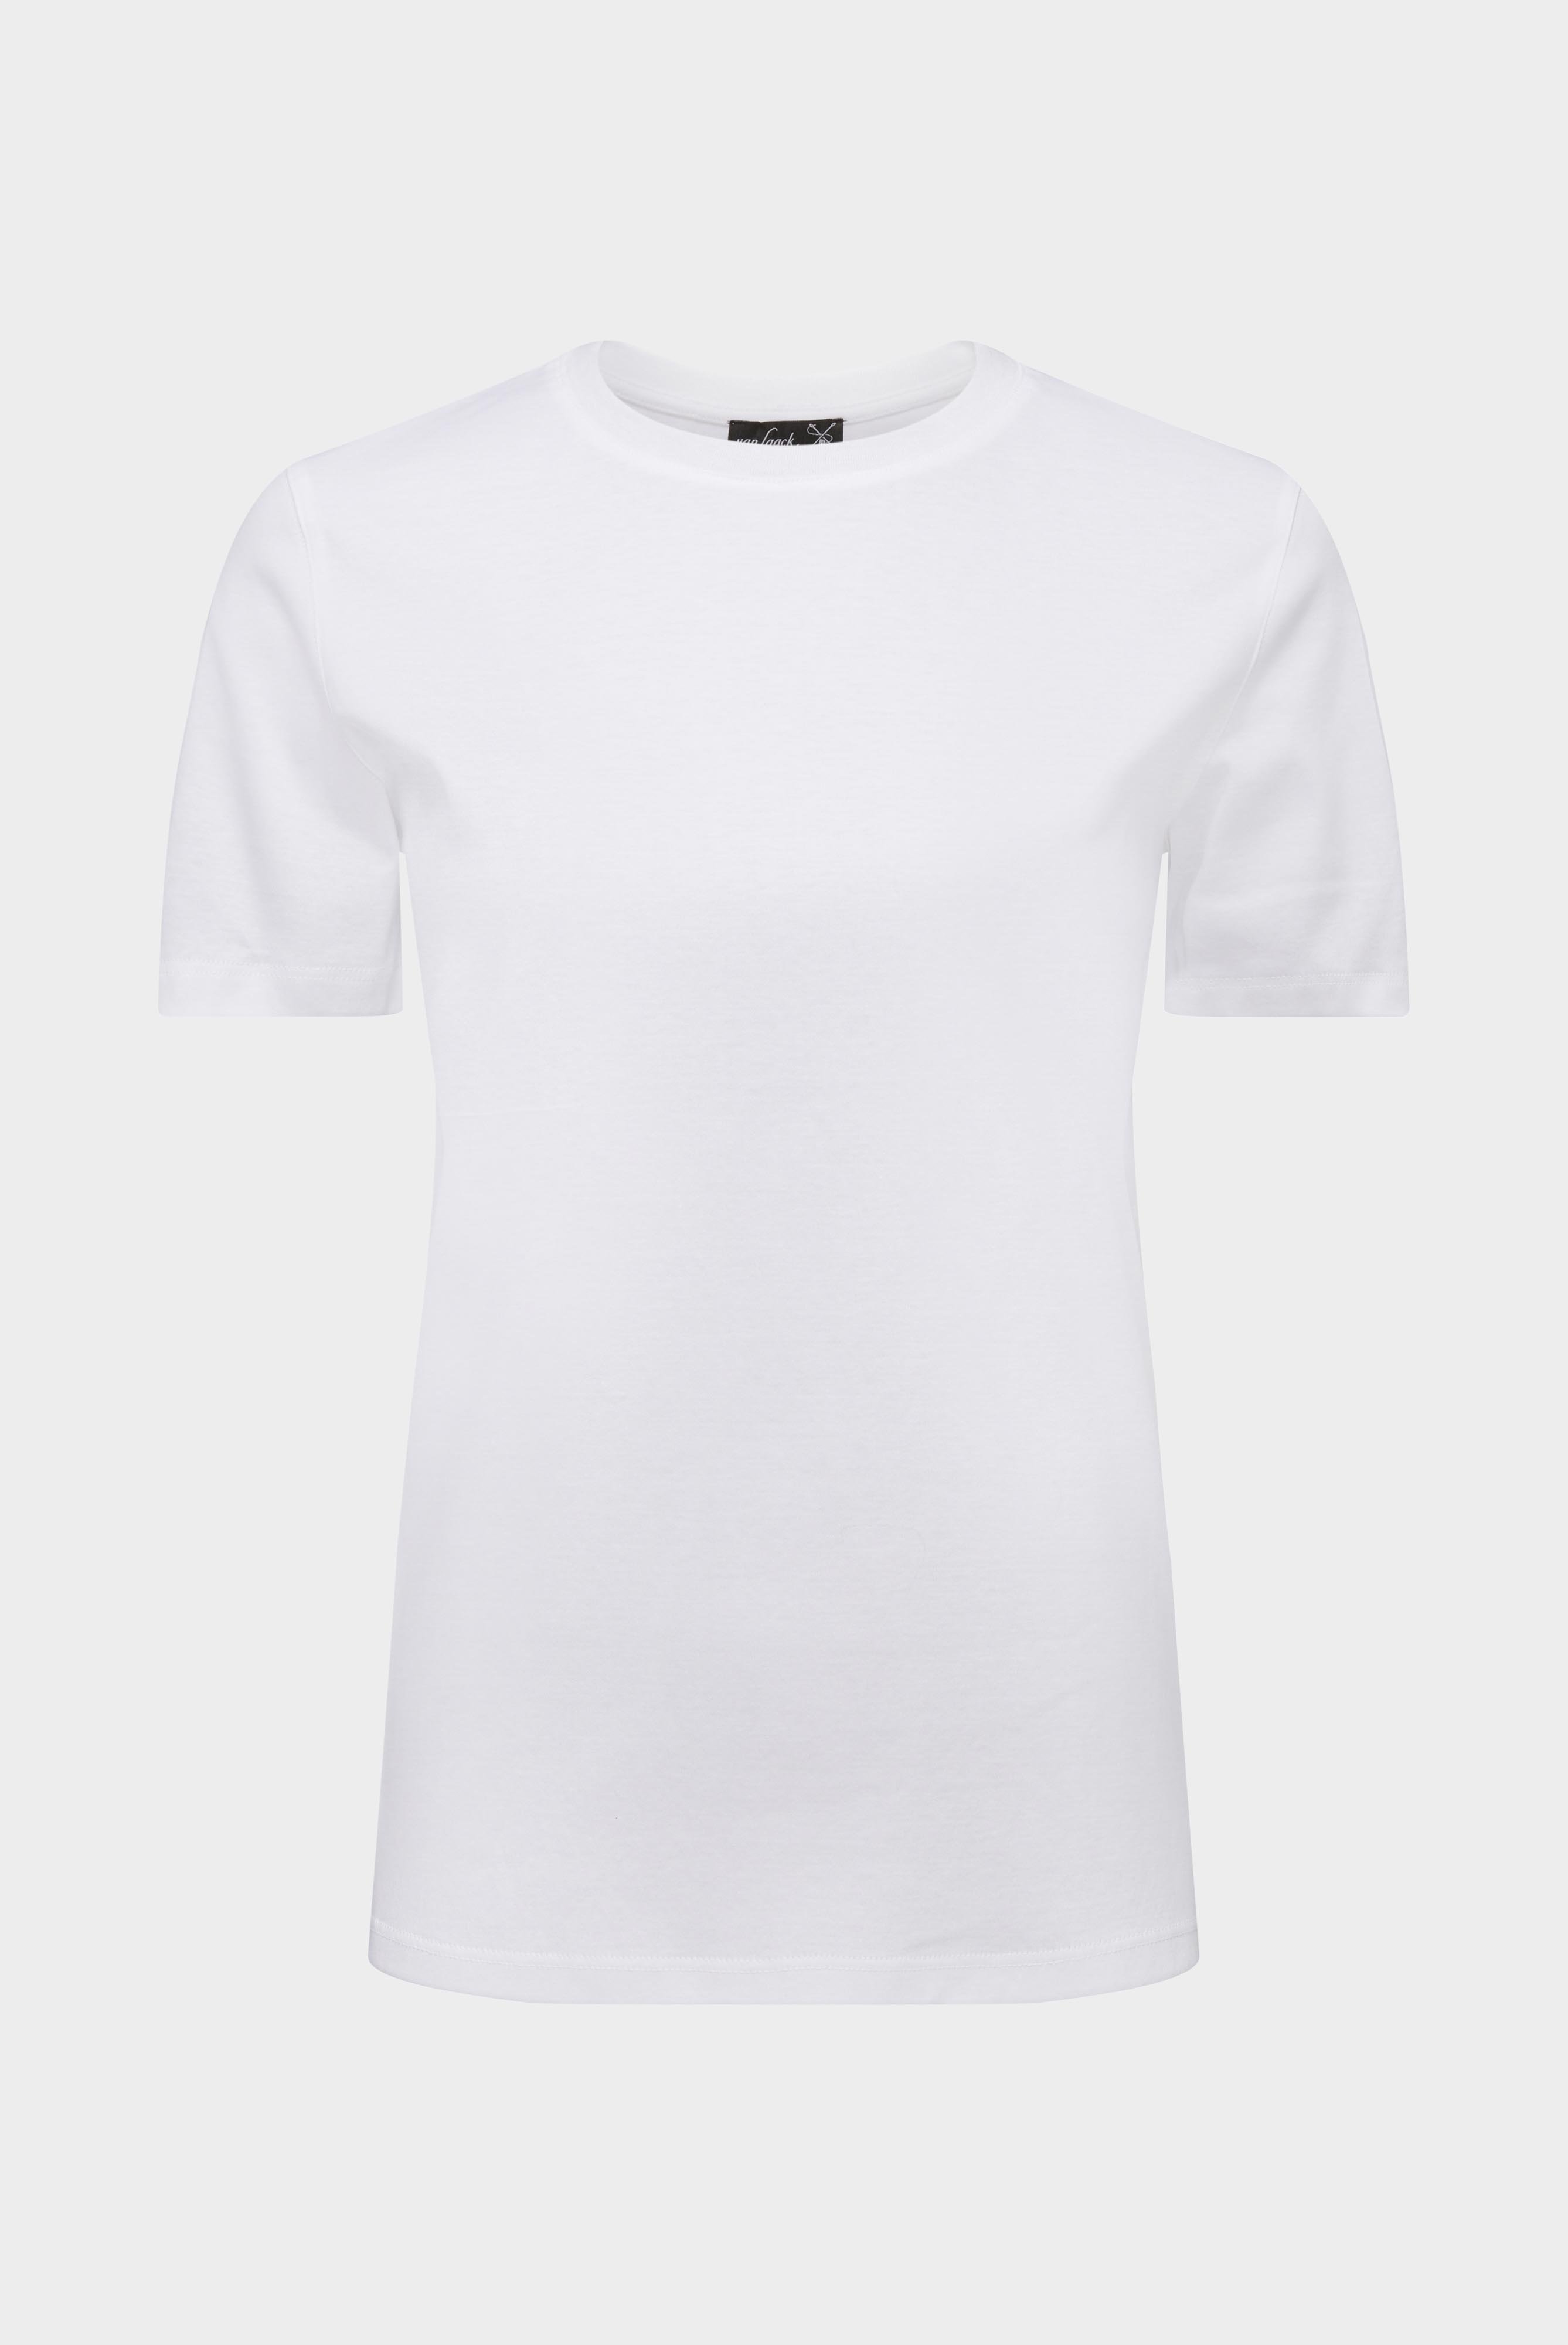 Tops & T-Shirts+Jersey T-Shirt+05.6384.18.180031.000.34